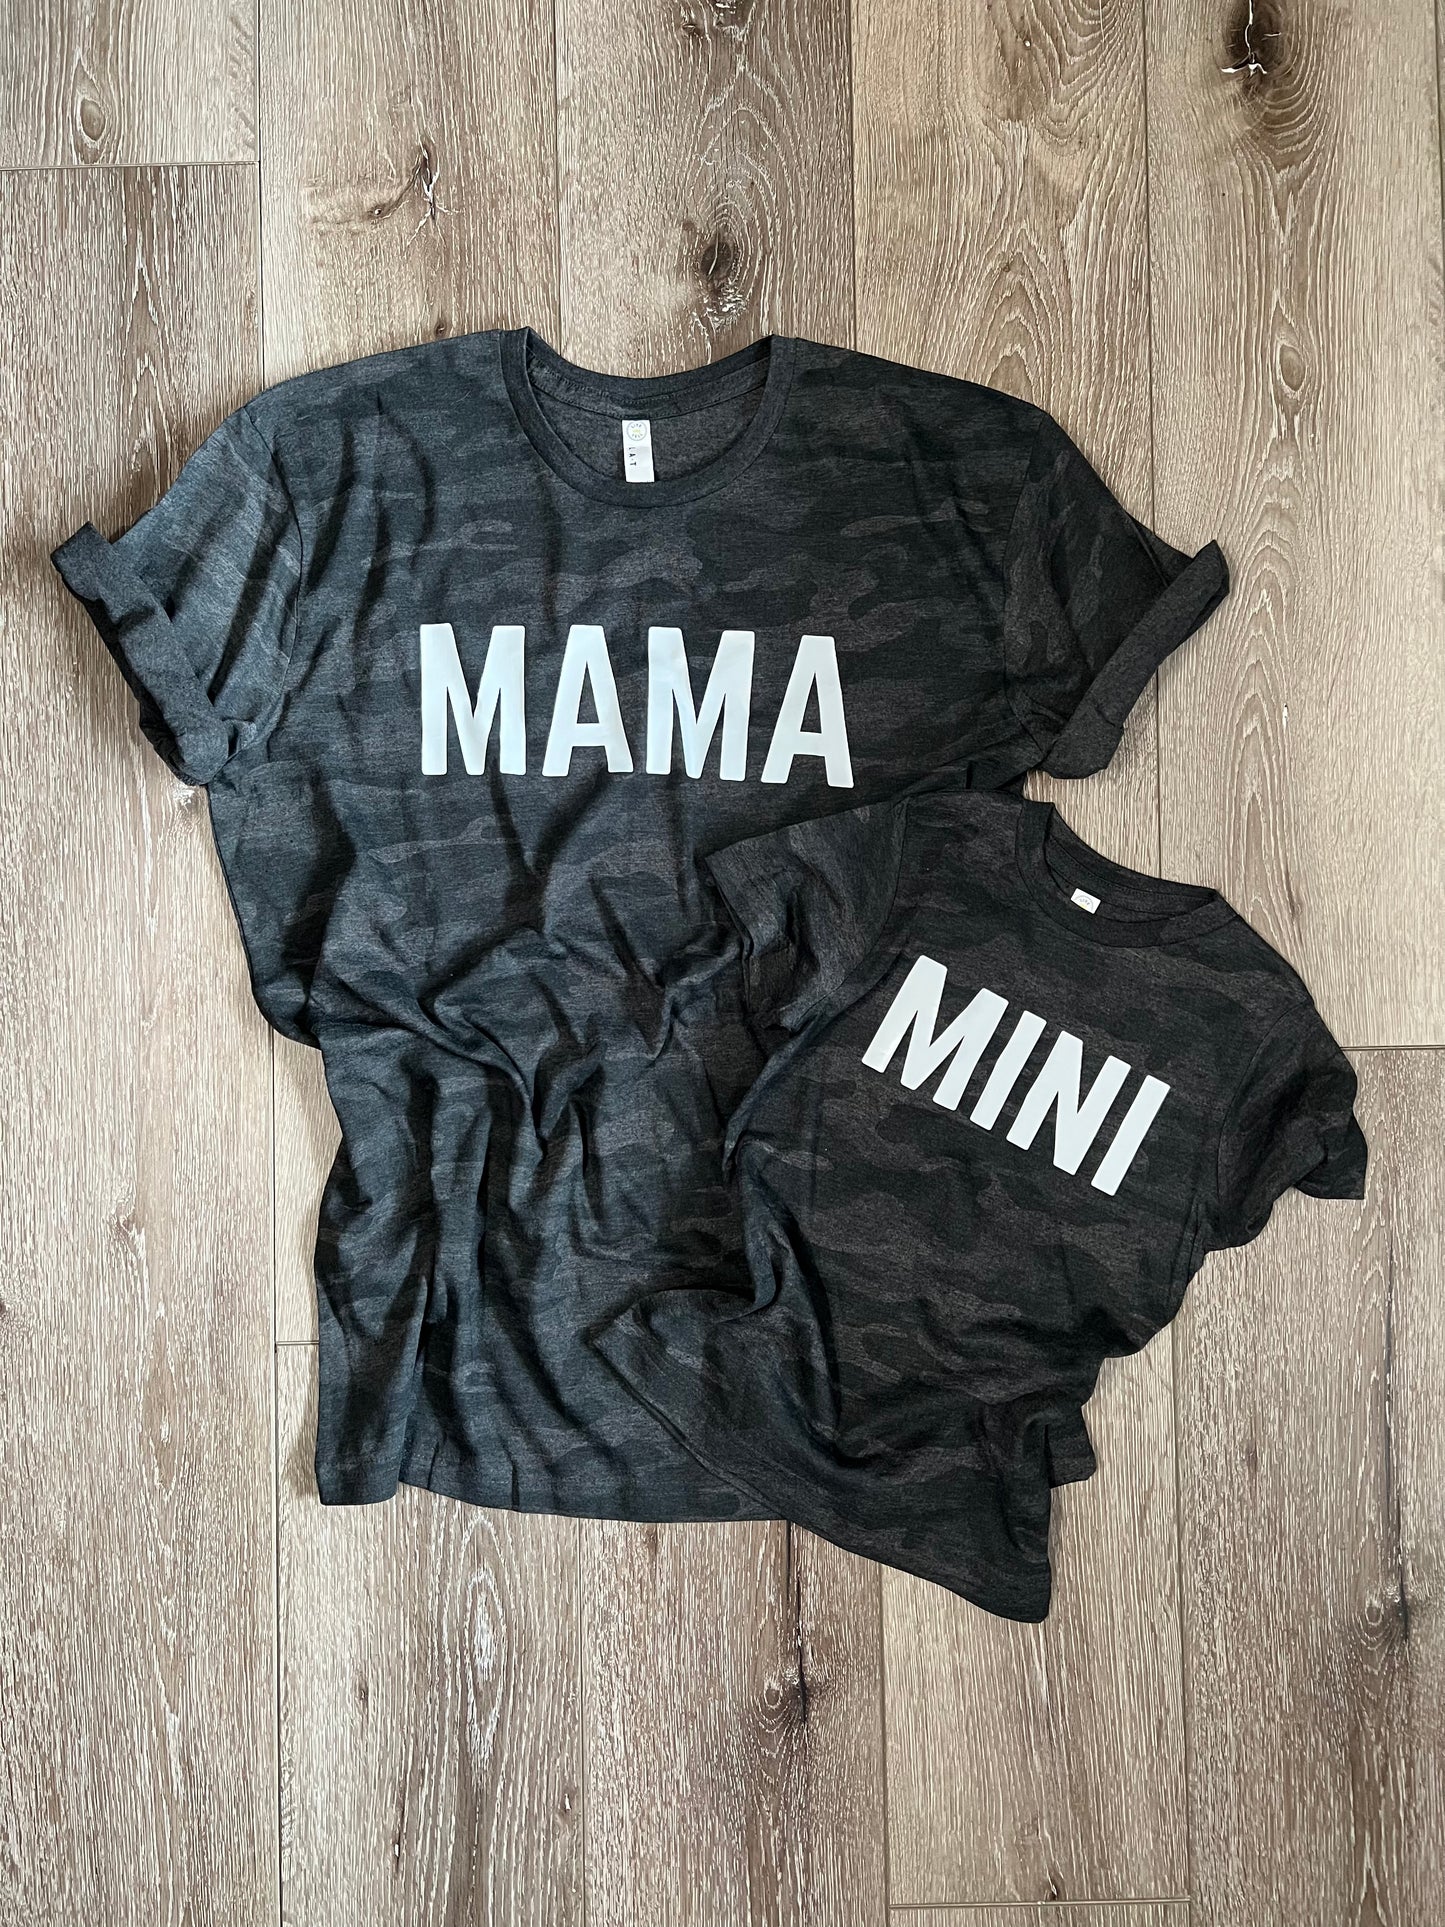 Mama + Mini (Mama Shirt Only)